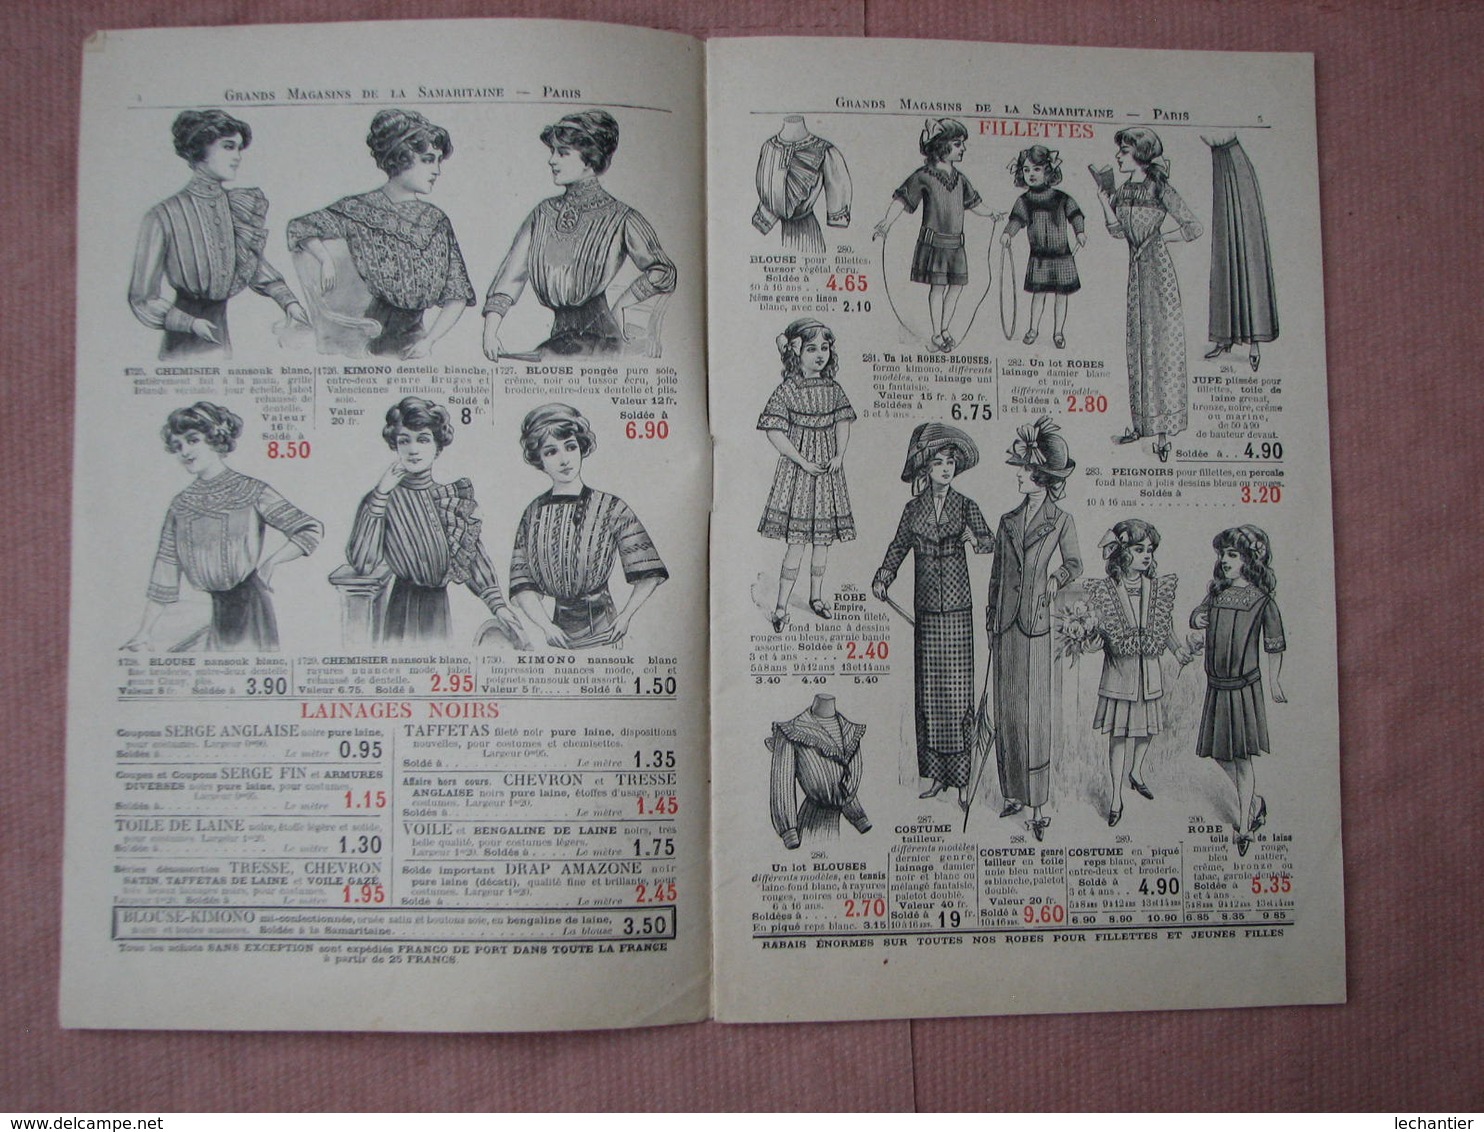 La Samaritaine 1911 -1913 - 2 catalogues soldes d'été  et soldes fin de saison TBE